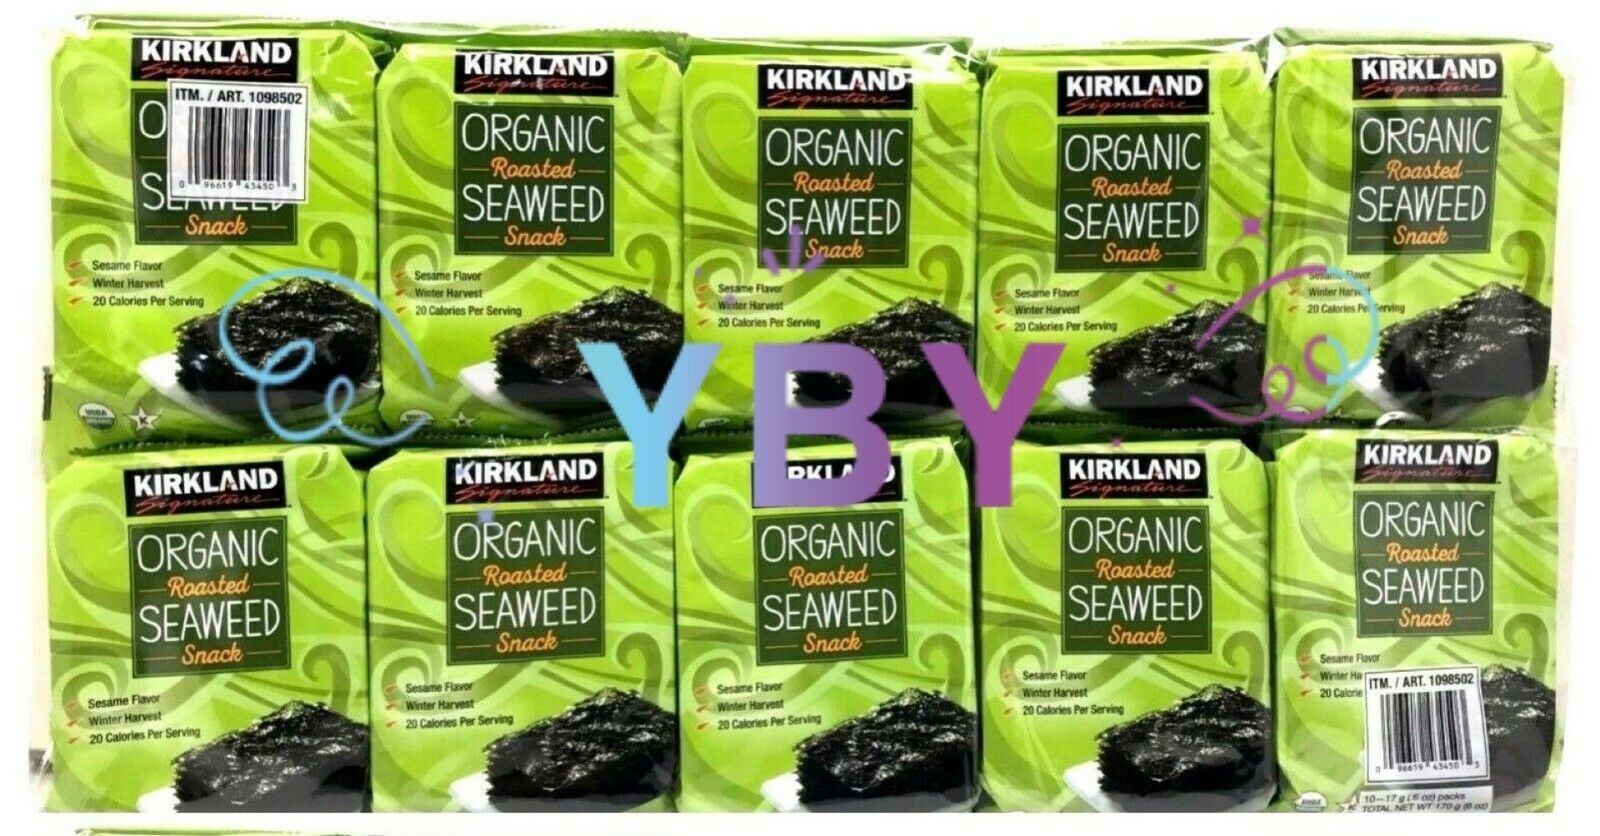 Kirkland Signature Organic Roasted Seaweed Snack 10*0.6 Oz Each Pack